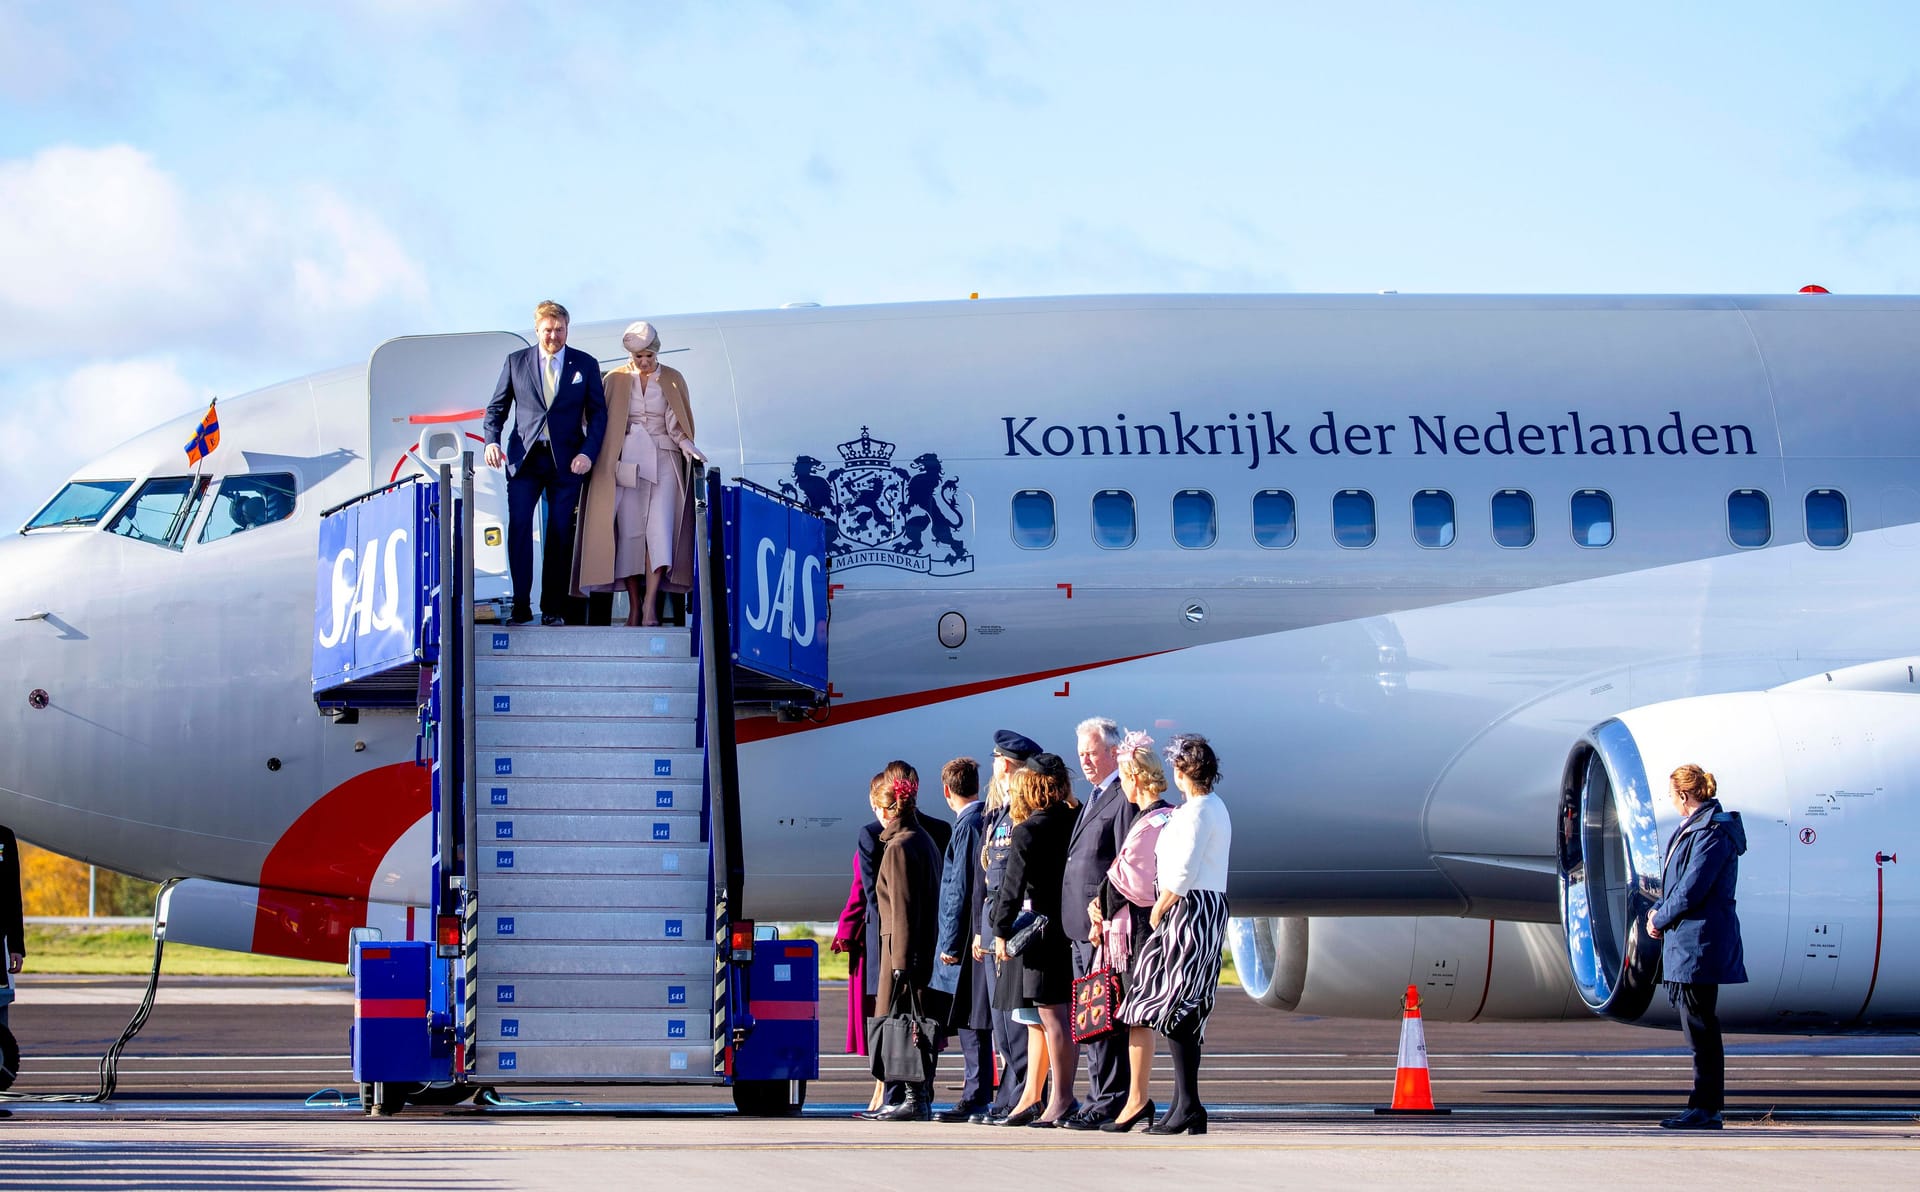 Am Dienstag startete die dreitägige Schweden-Reise der niederländischen Royals.